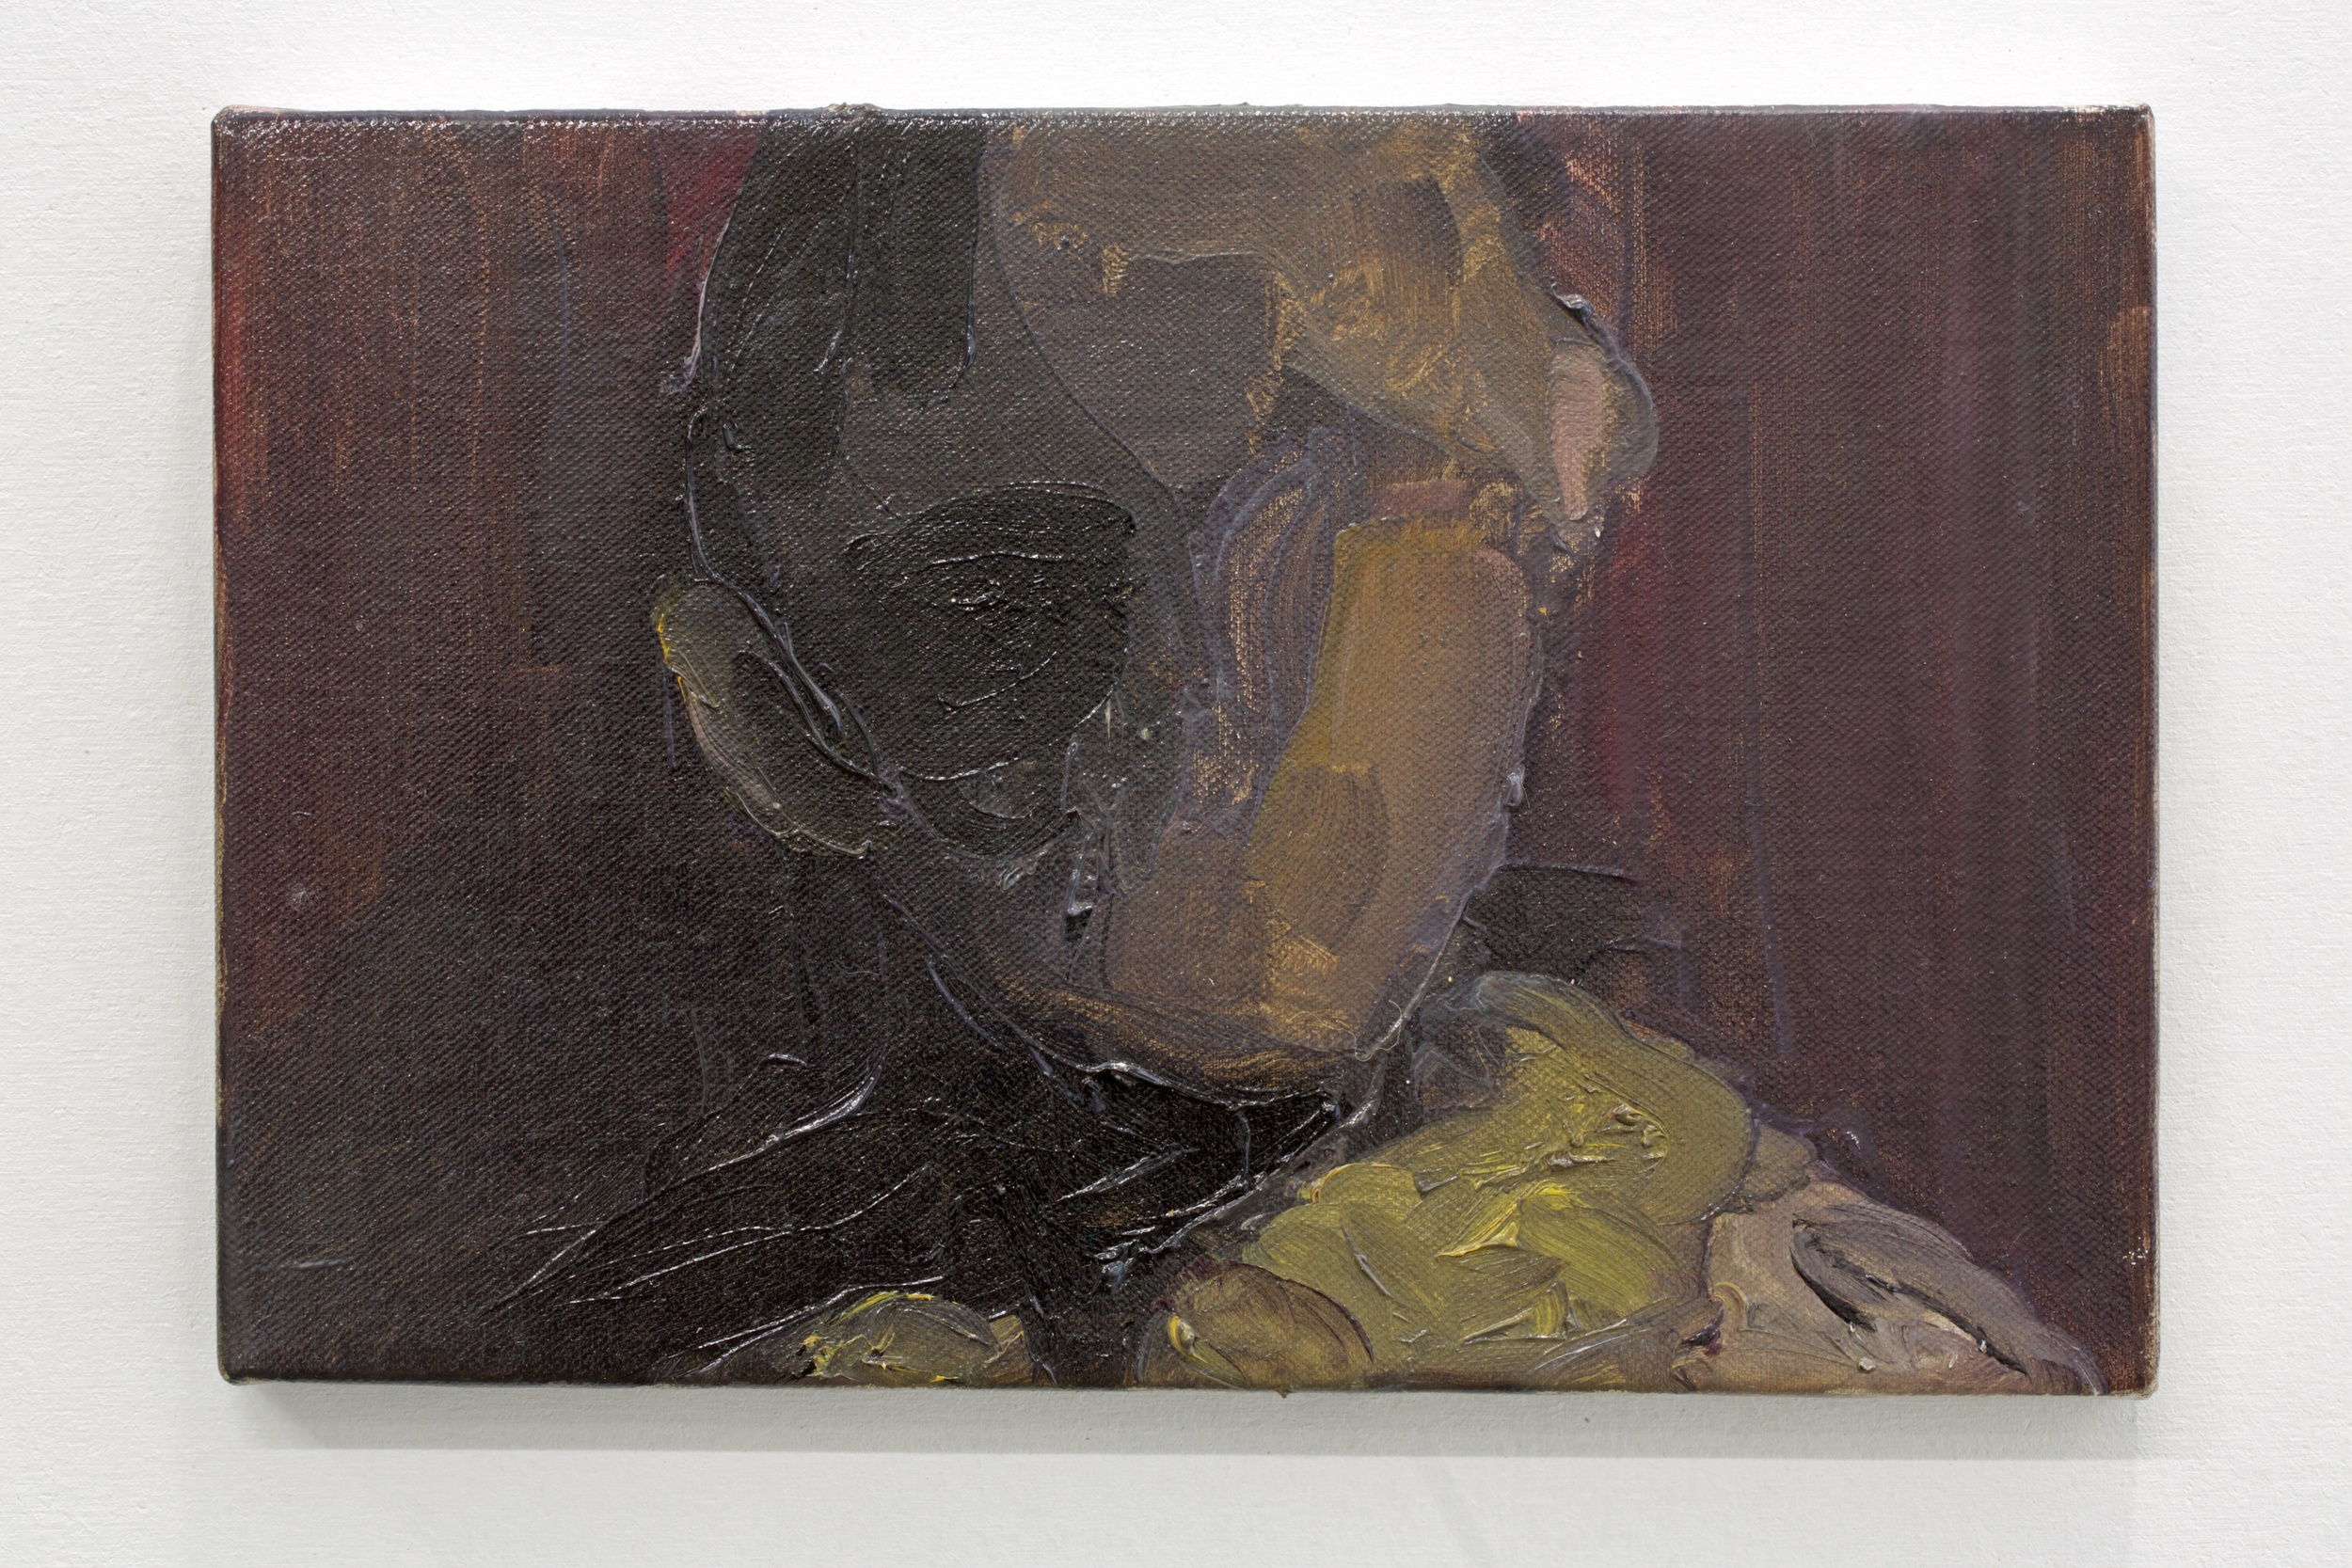  Rudy Cremonini, il soggetto, 2013 oil on canvas 20 x 30 cm 